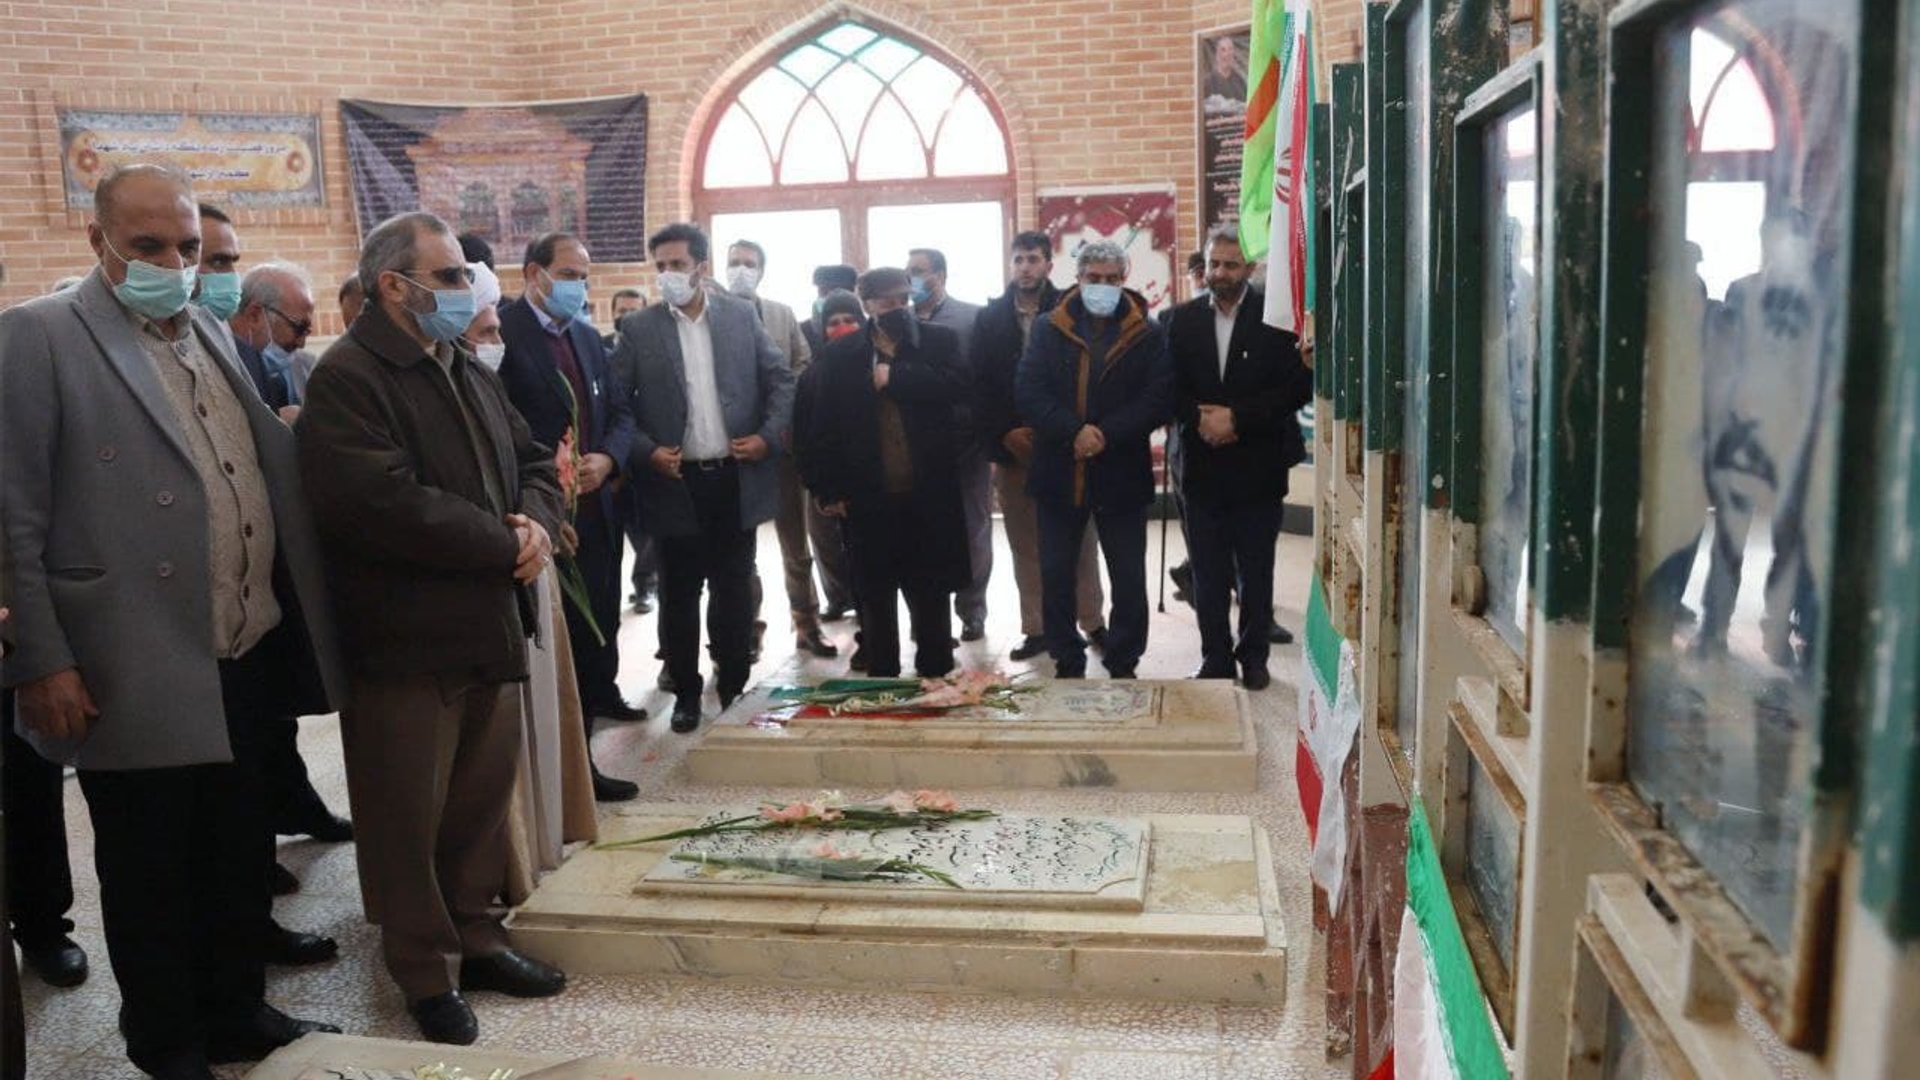 ادای احترام مسئولین به گلزار مطهر شهدا در روستای گرکان شهرستان آشتیان